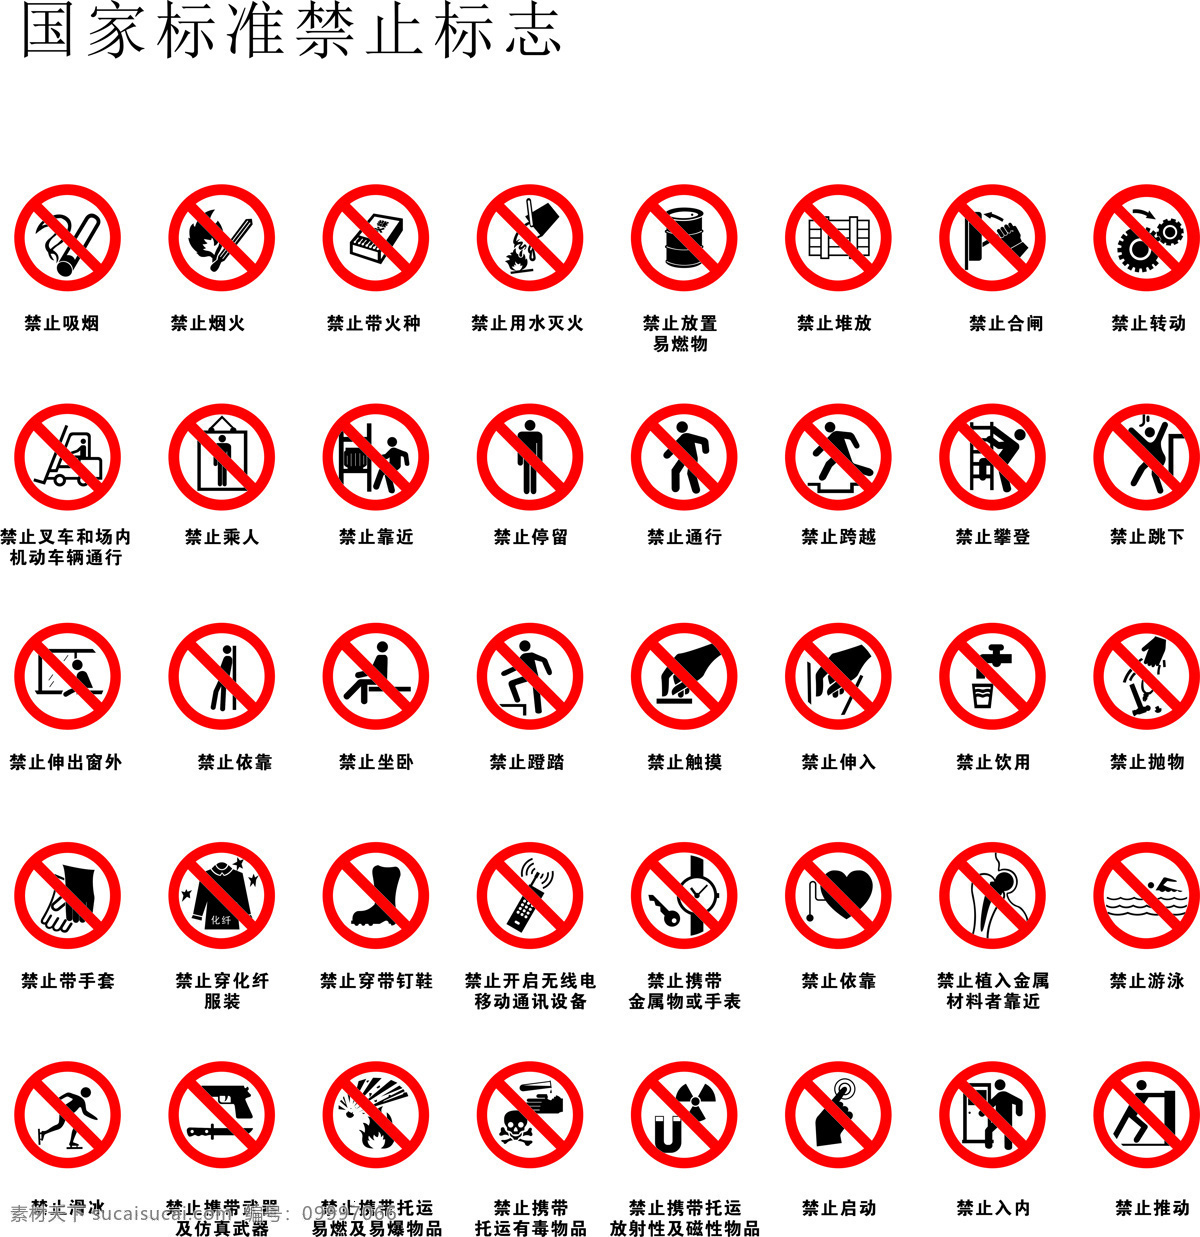 国标禁止标志 禁止标志 禁止 国标 警示标志 标志 标志图标 公共标识标志